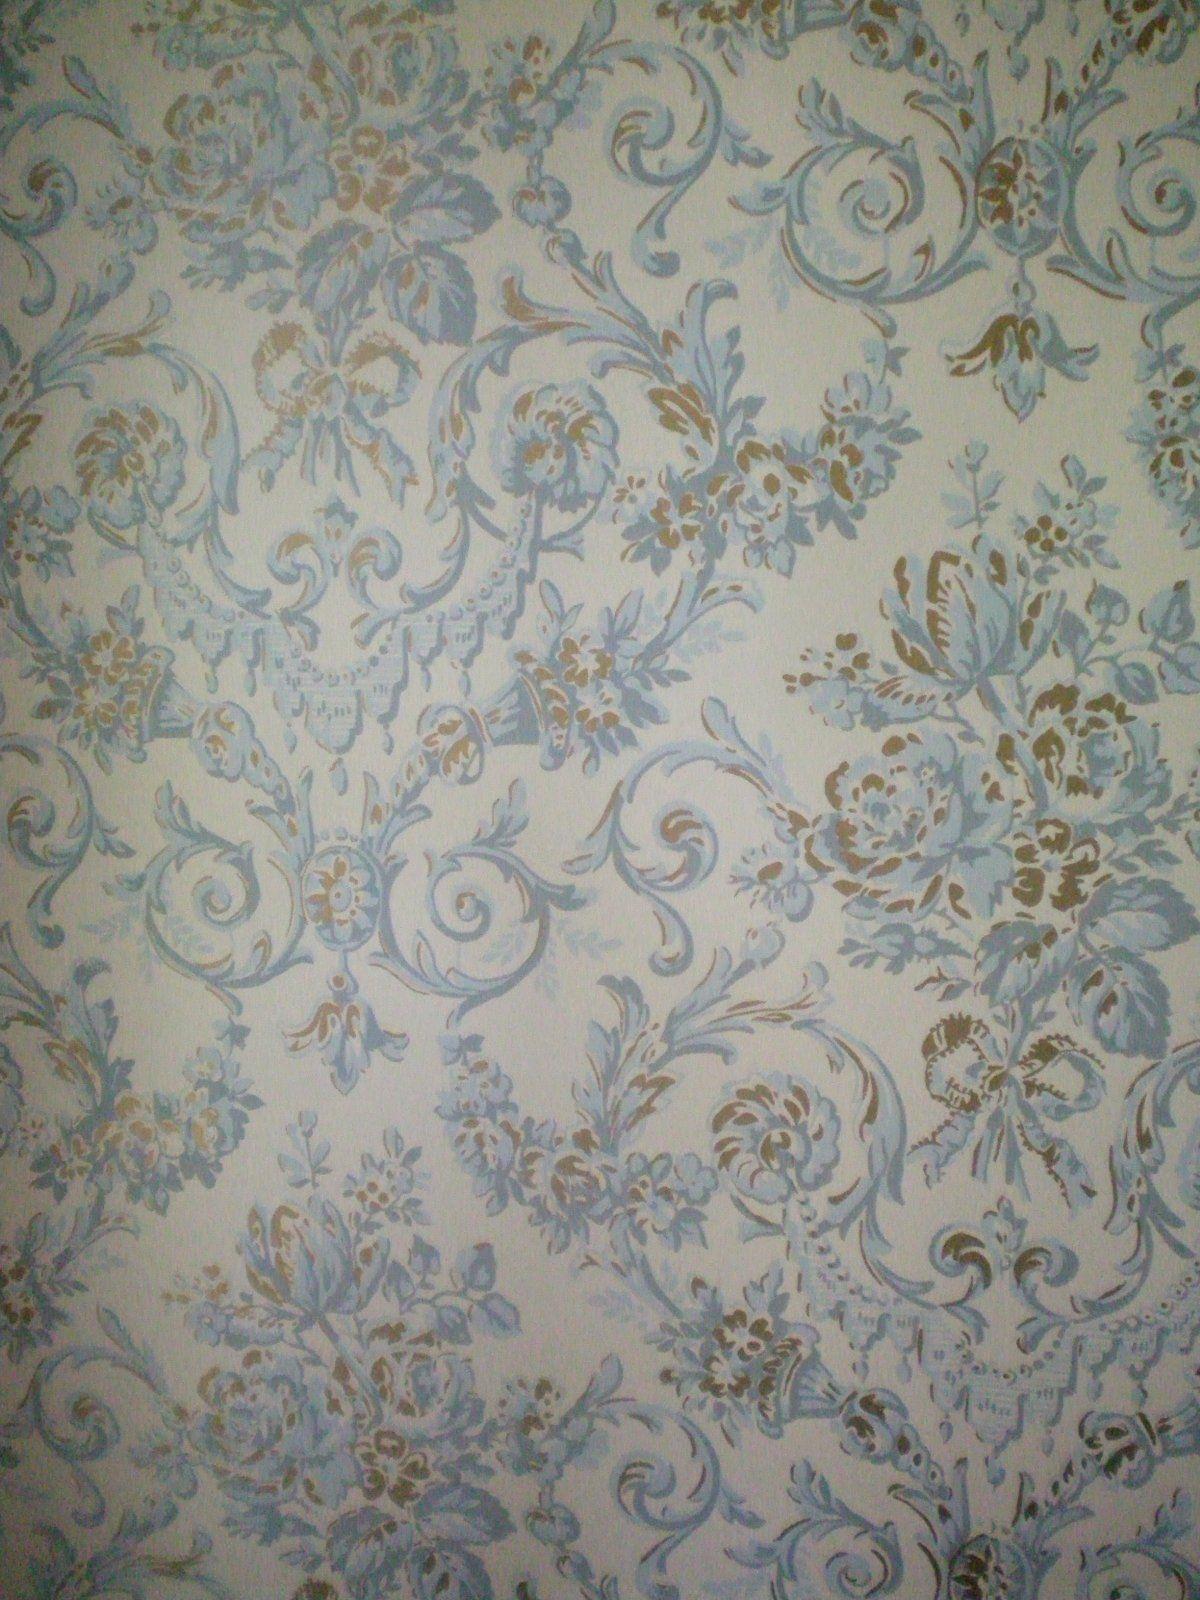 Victorian Wallpaper Patterns 98982 Best HD Wallpaper. Wallpaiper